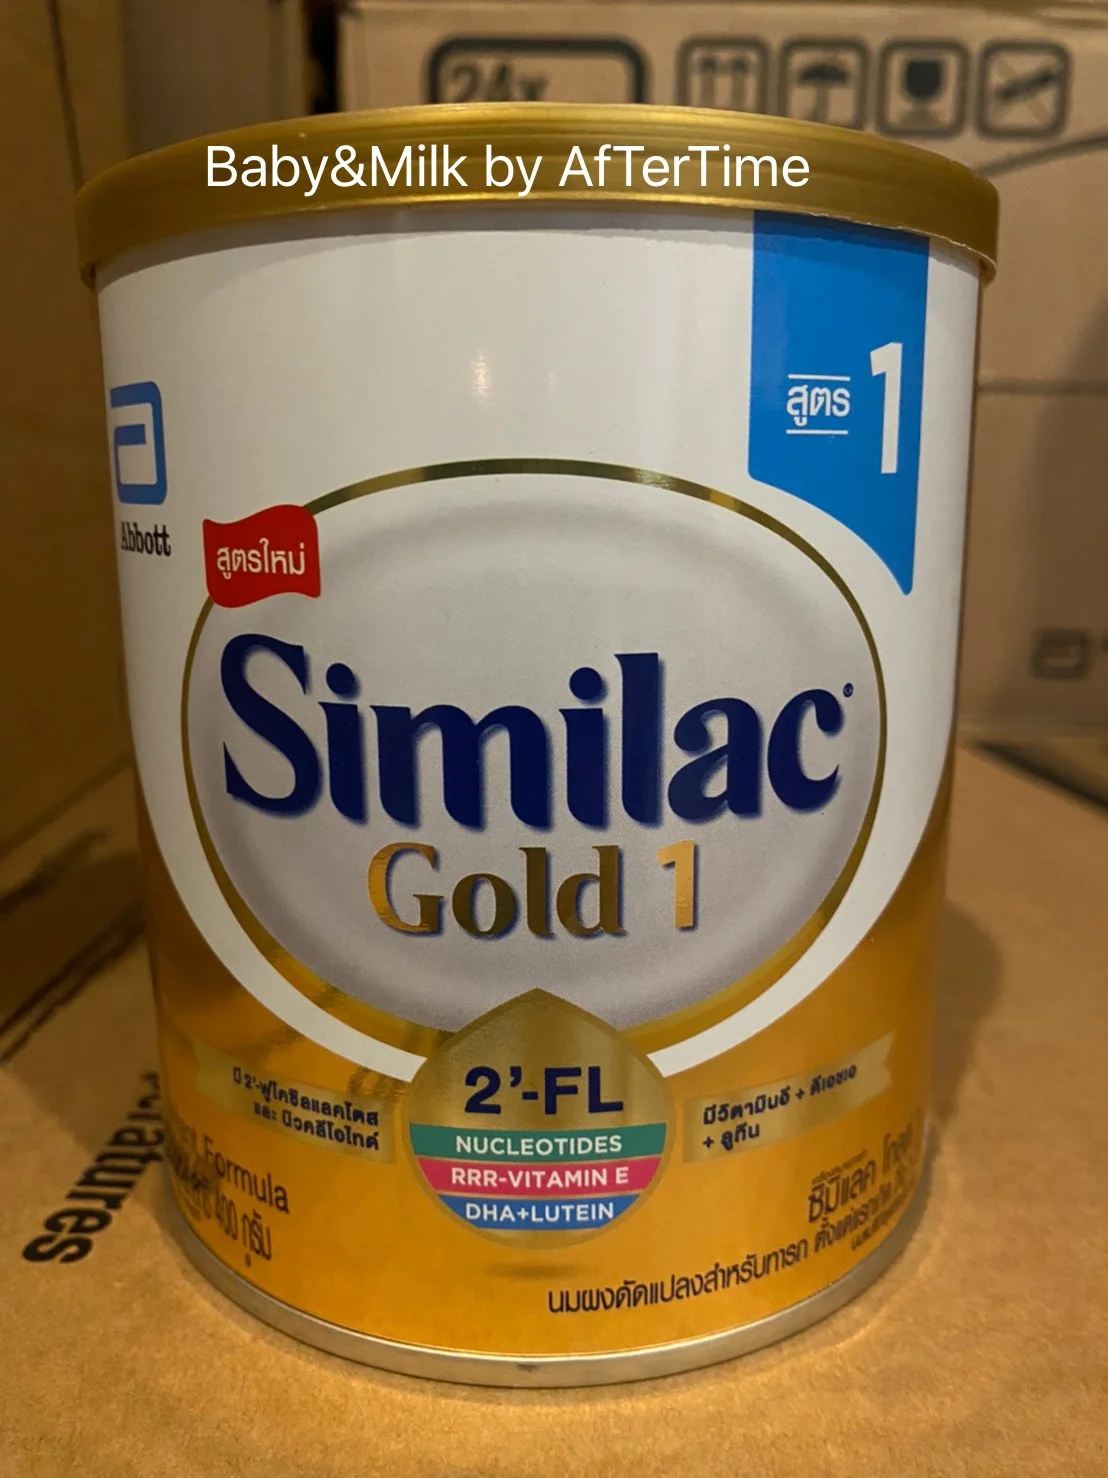 Similac Gold 1 ซิมิแลค โกลด์ 1 (400g) Exp.12/5/2022